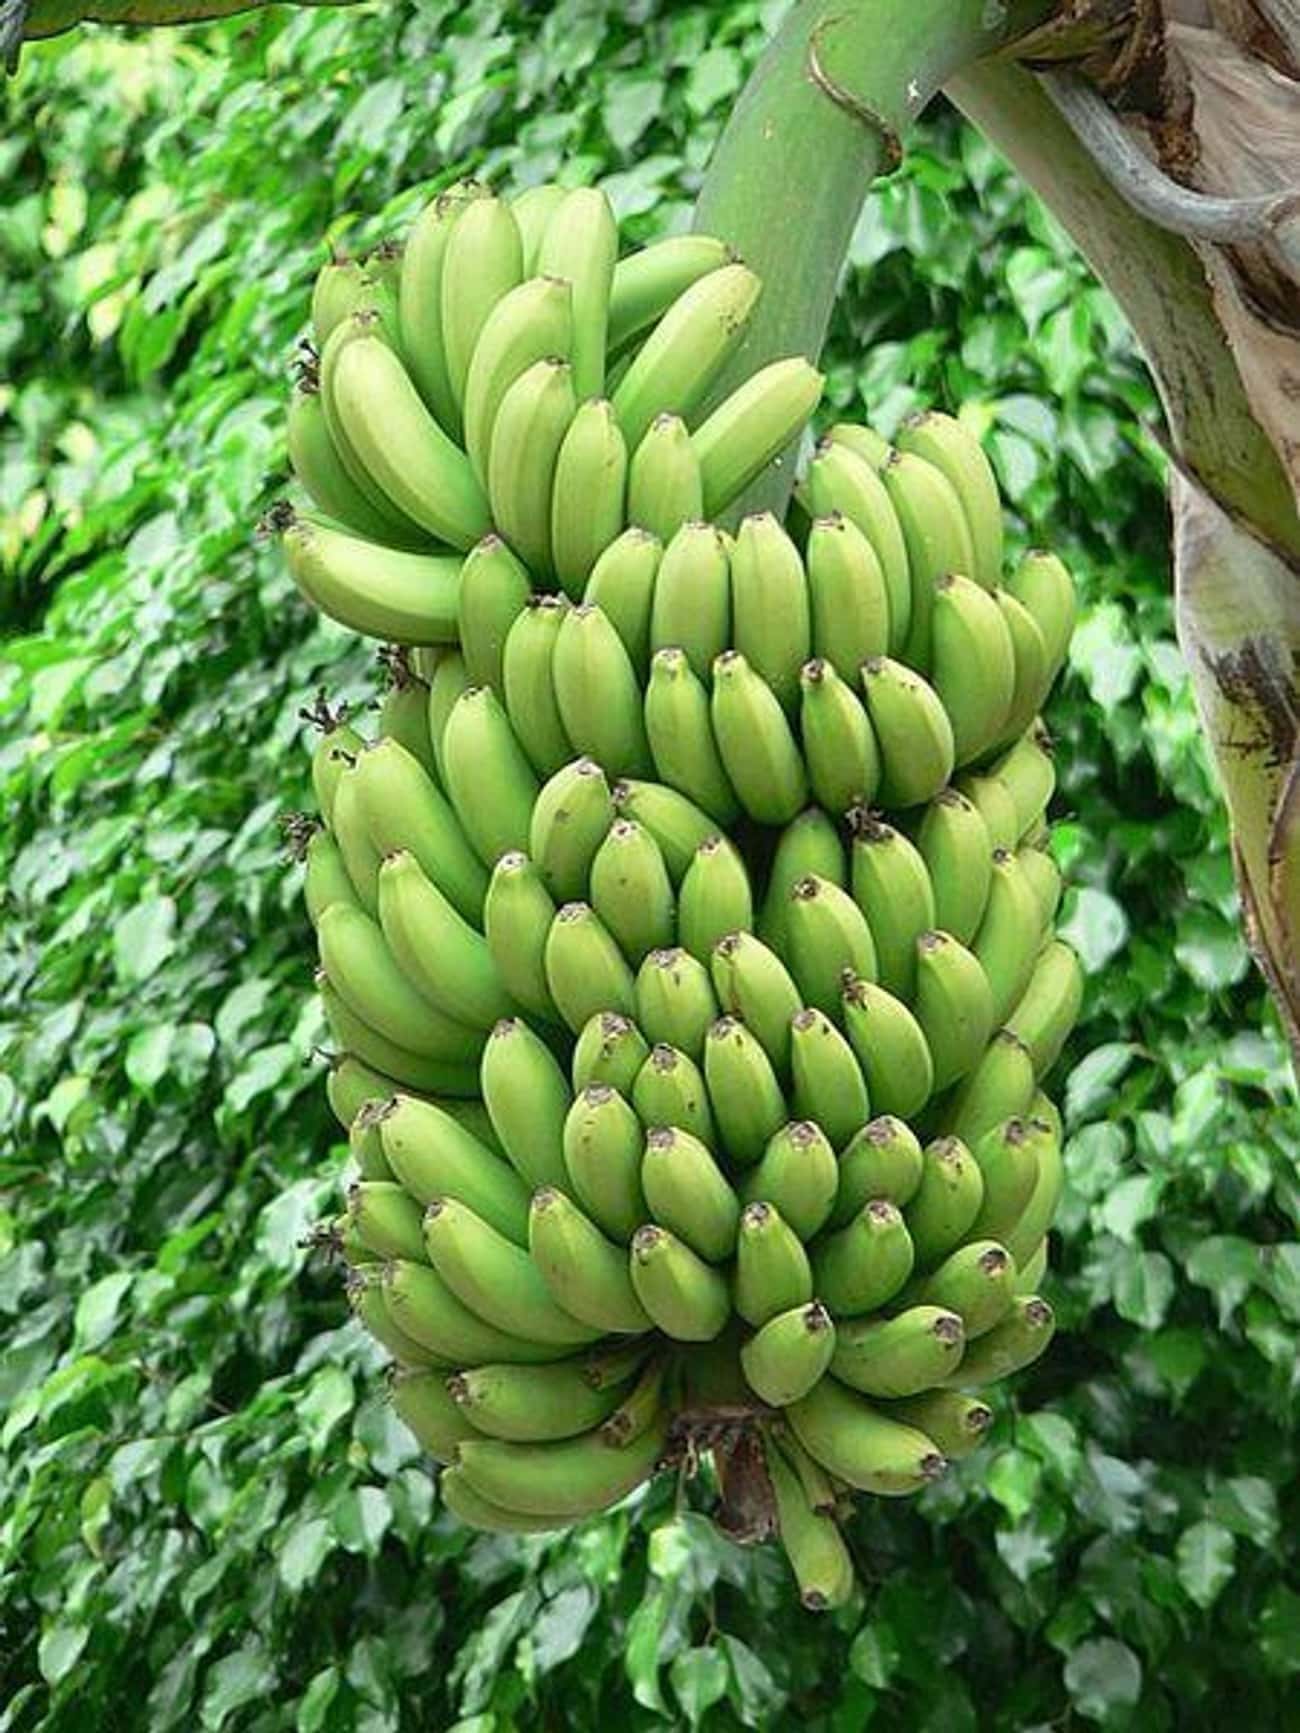 Banana Trees Are Actually Herbs